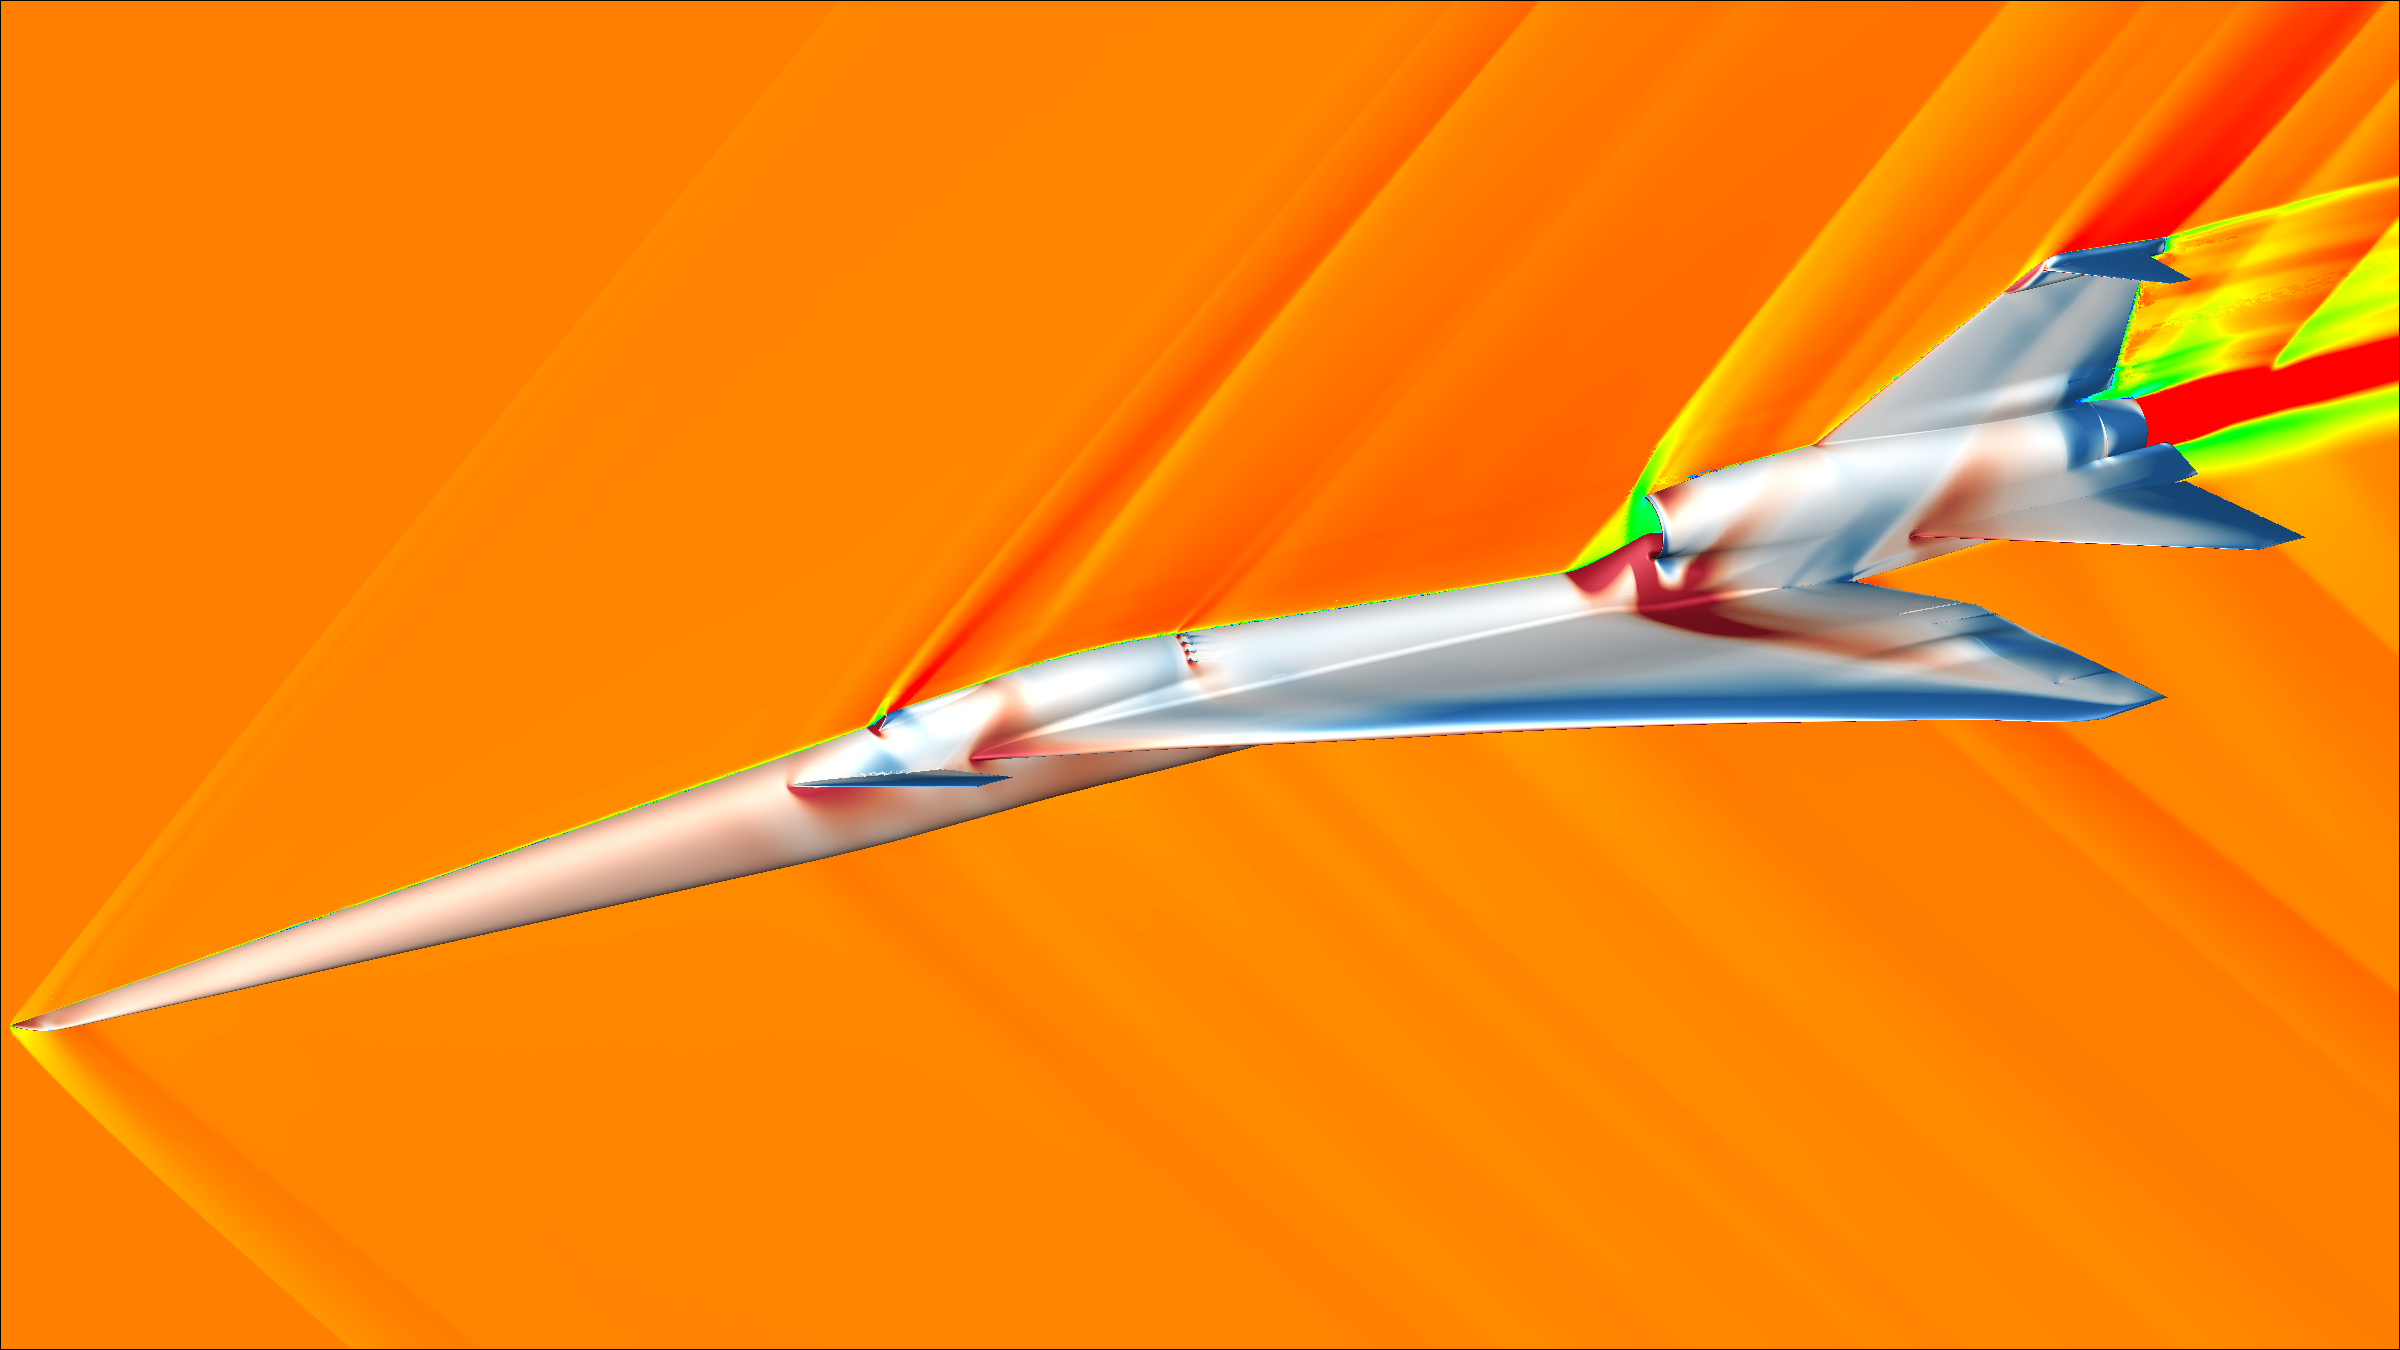 Visualizing Quieter Supersonic Flight